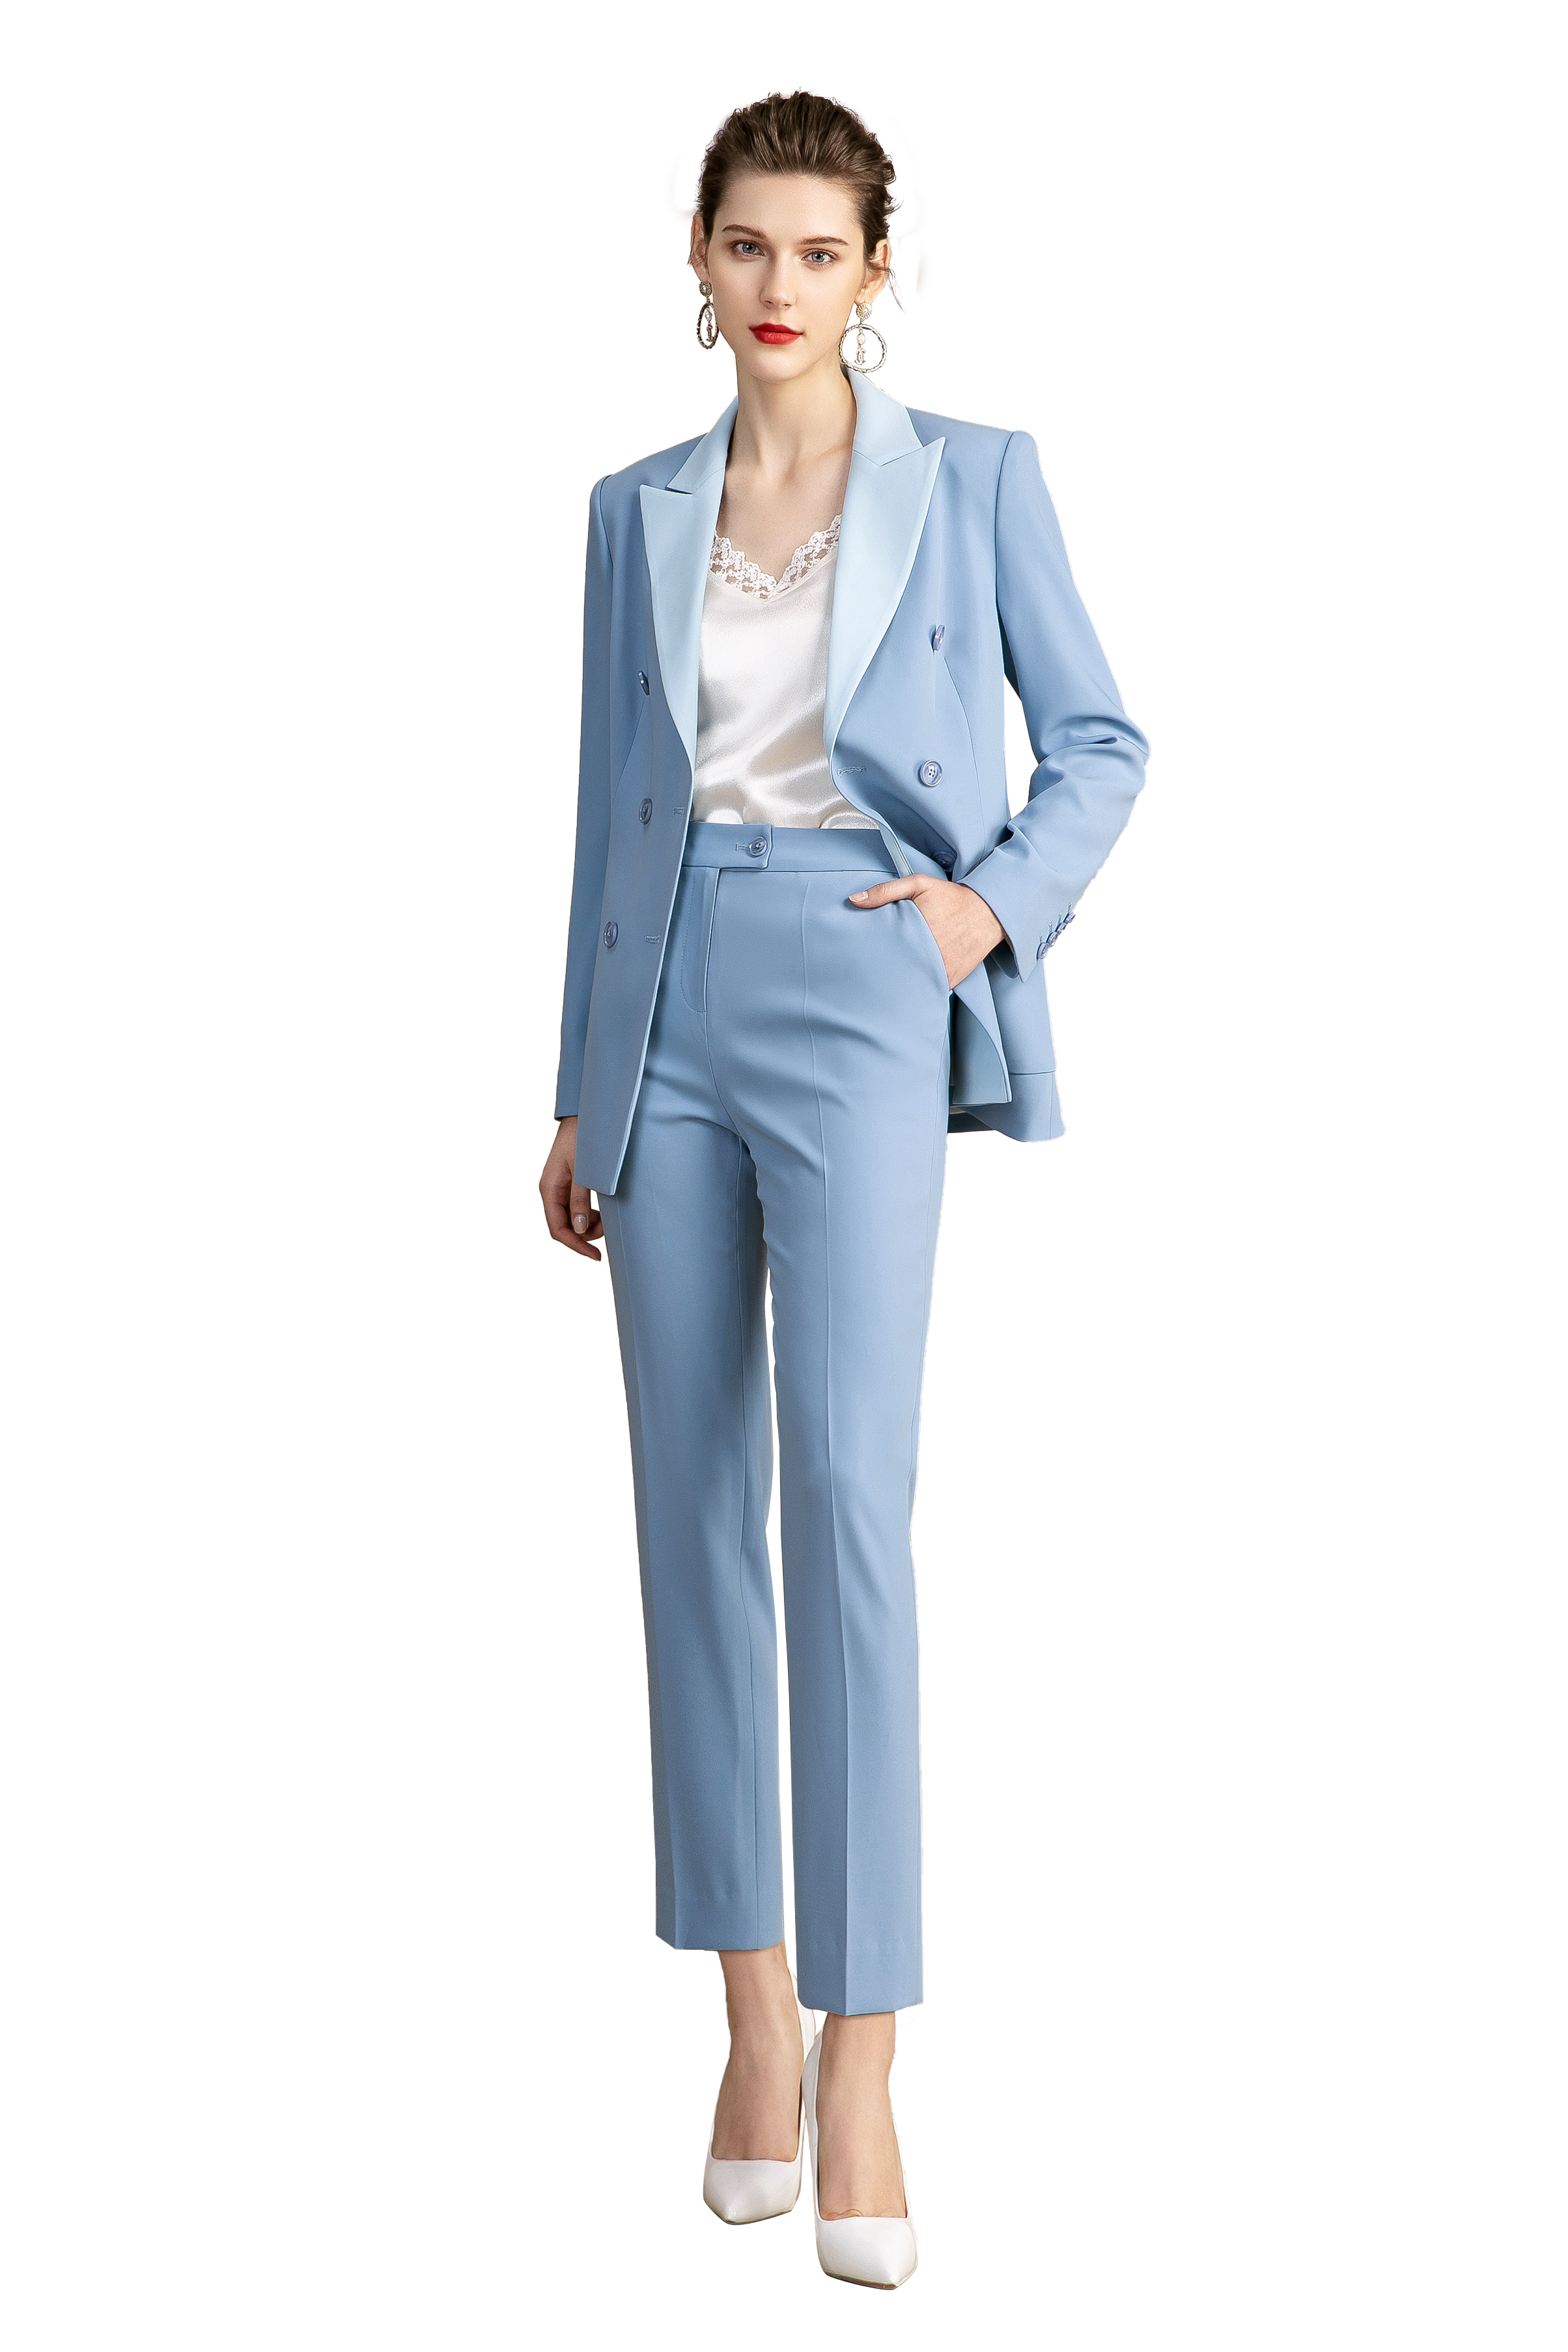 Buy Light Blue Formal Tuxedo Pant Suits Online for Women – FashionByTeresa